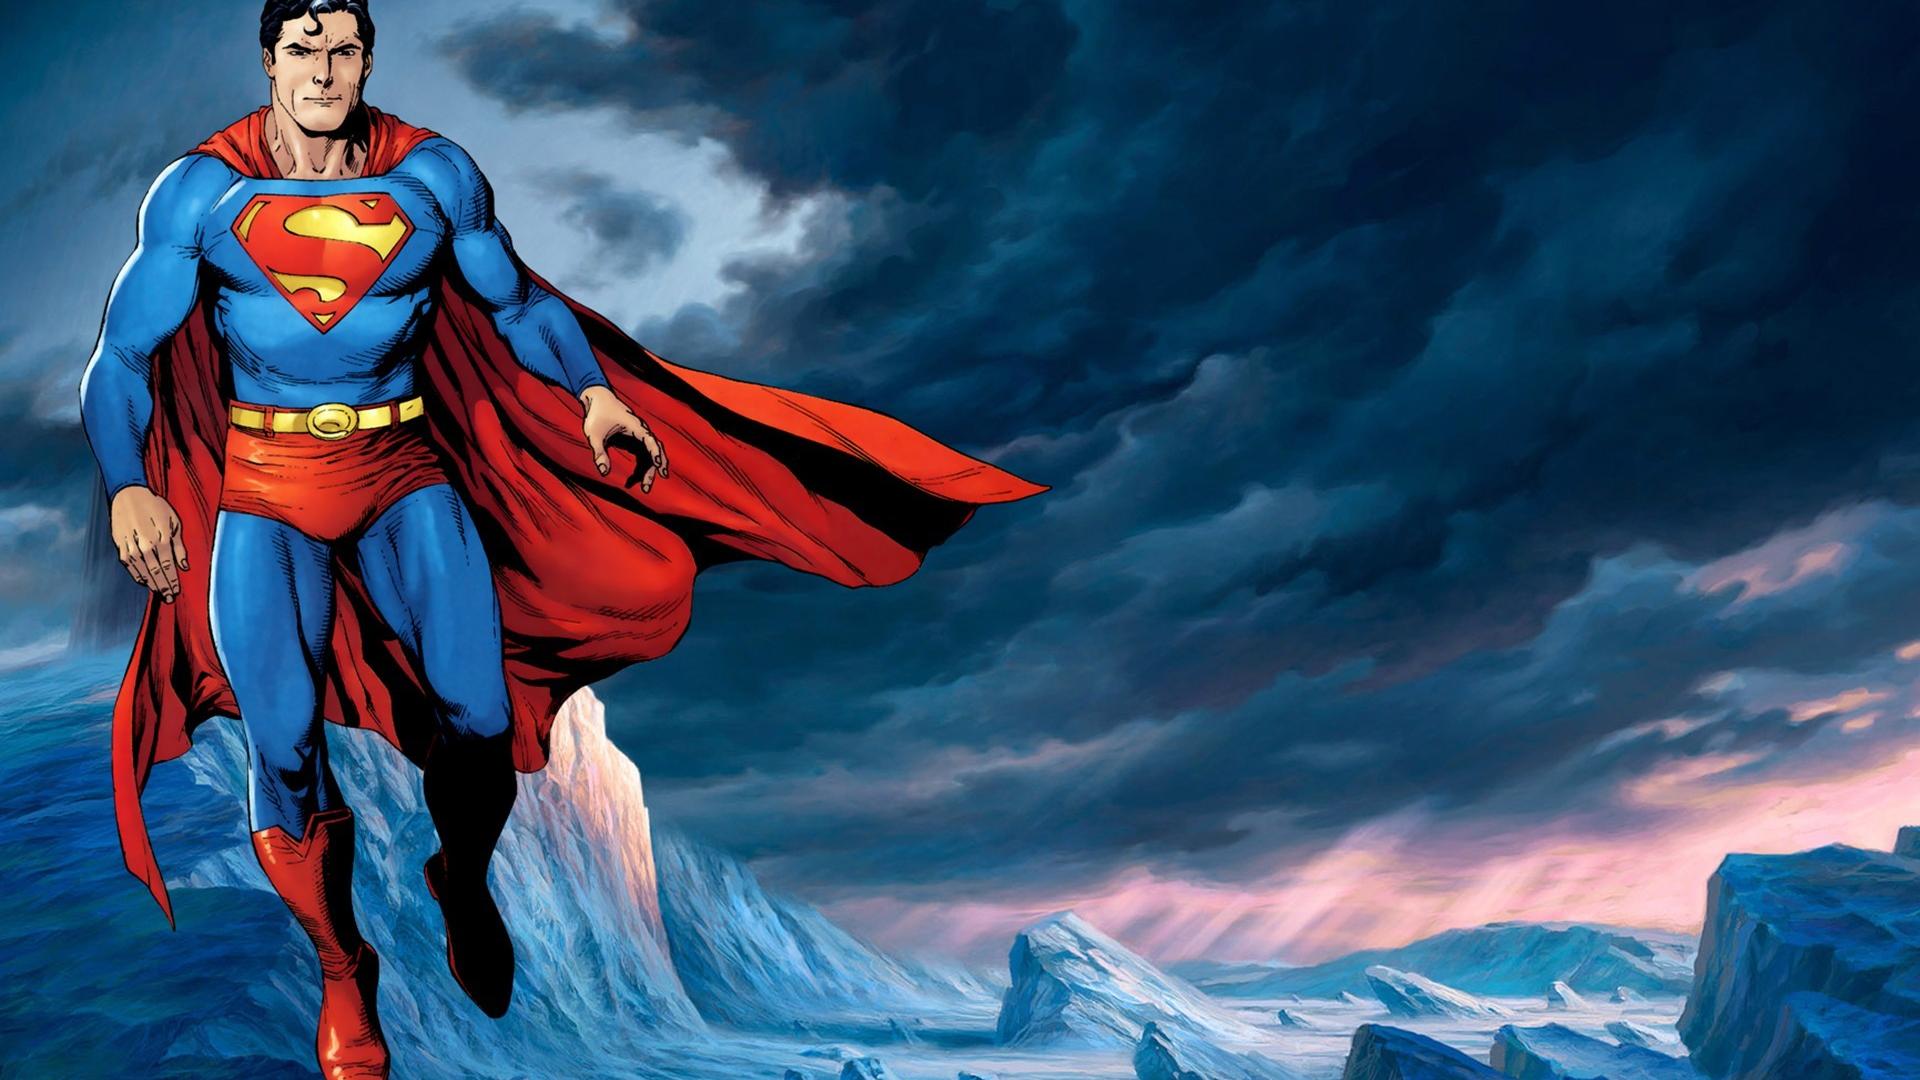 Dc comics superman superheroes wallpaper | (42331)